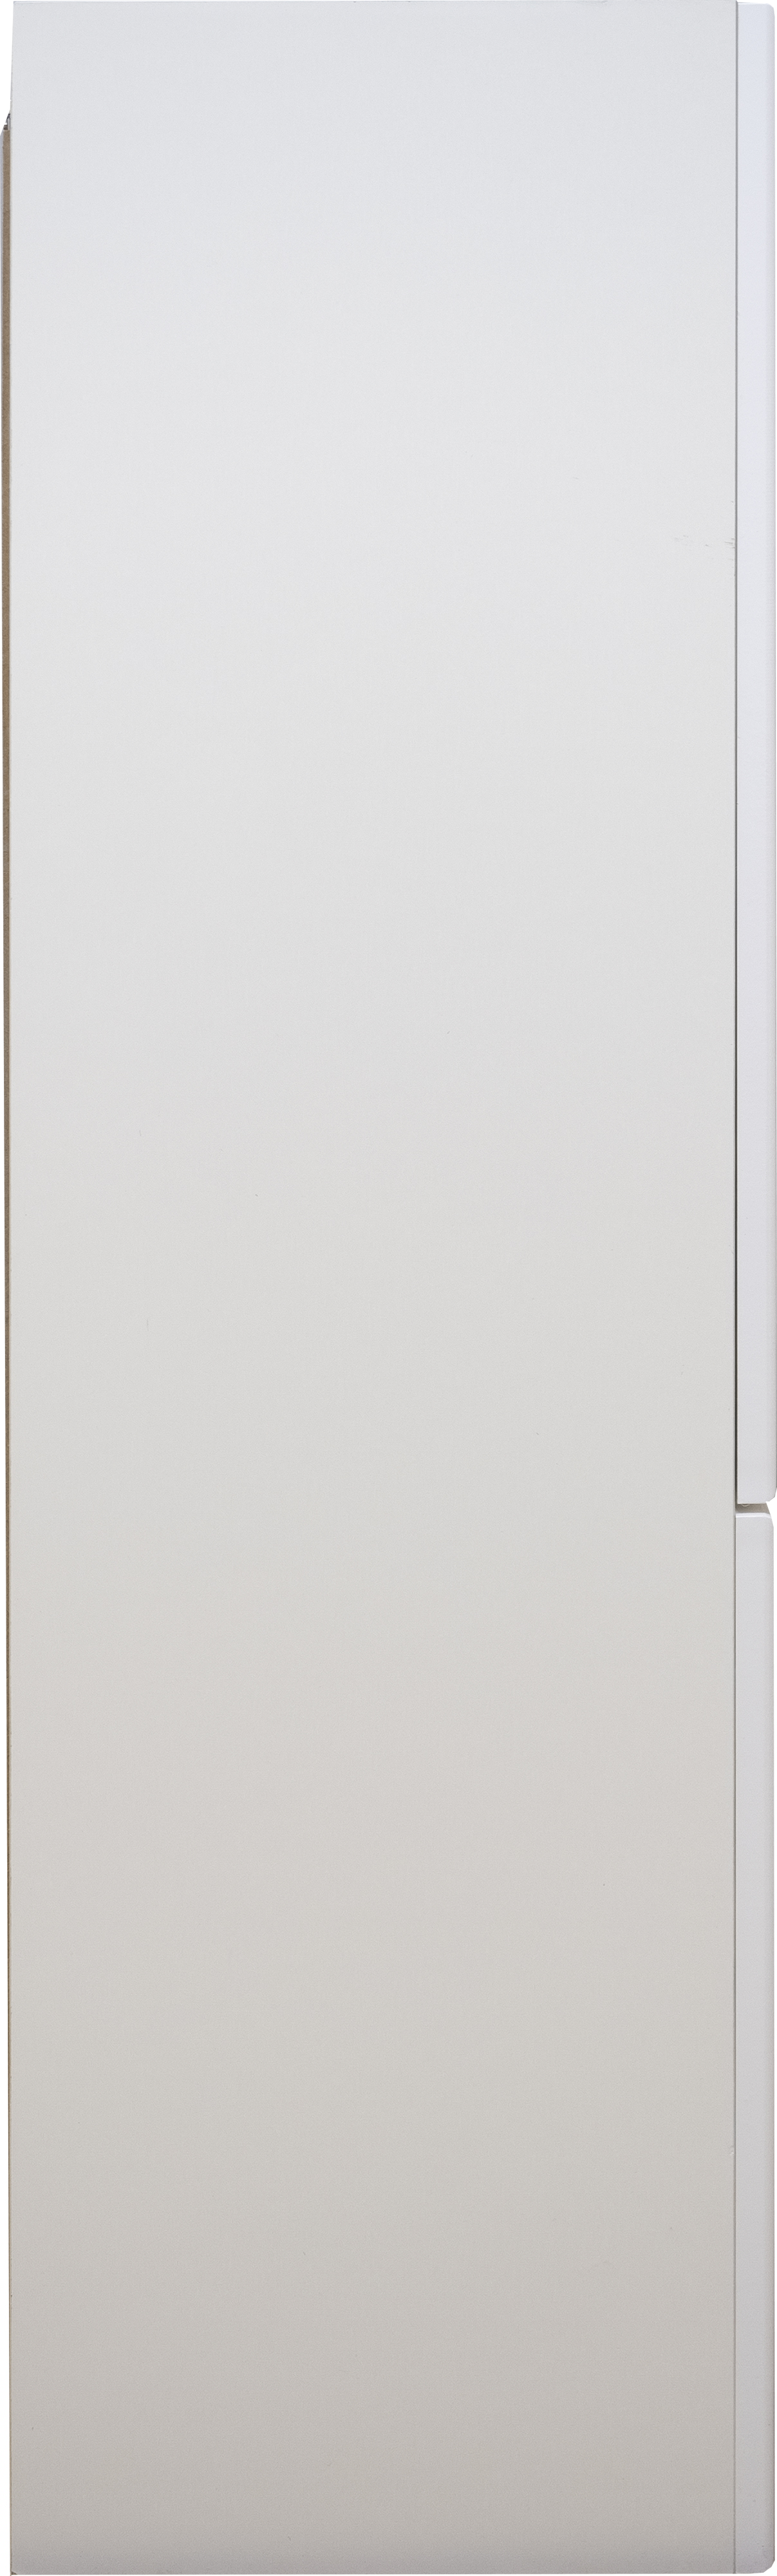 Шкаф DIWO Суздаль 60 над стиральной машиной, с бельевой корзиной СО-Су08060-01П1Я - 3